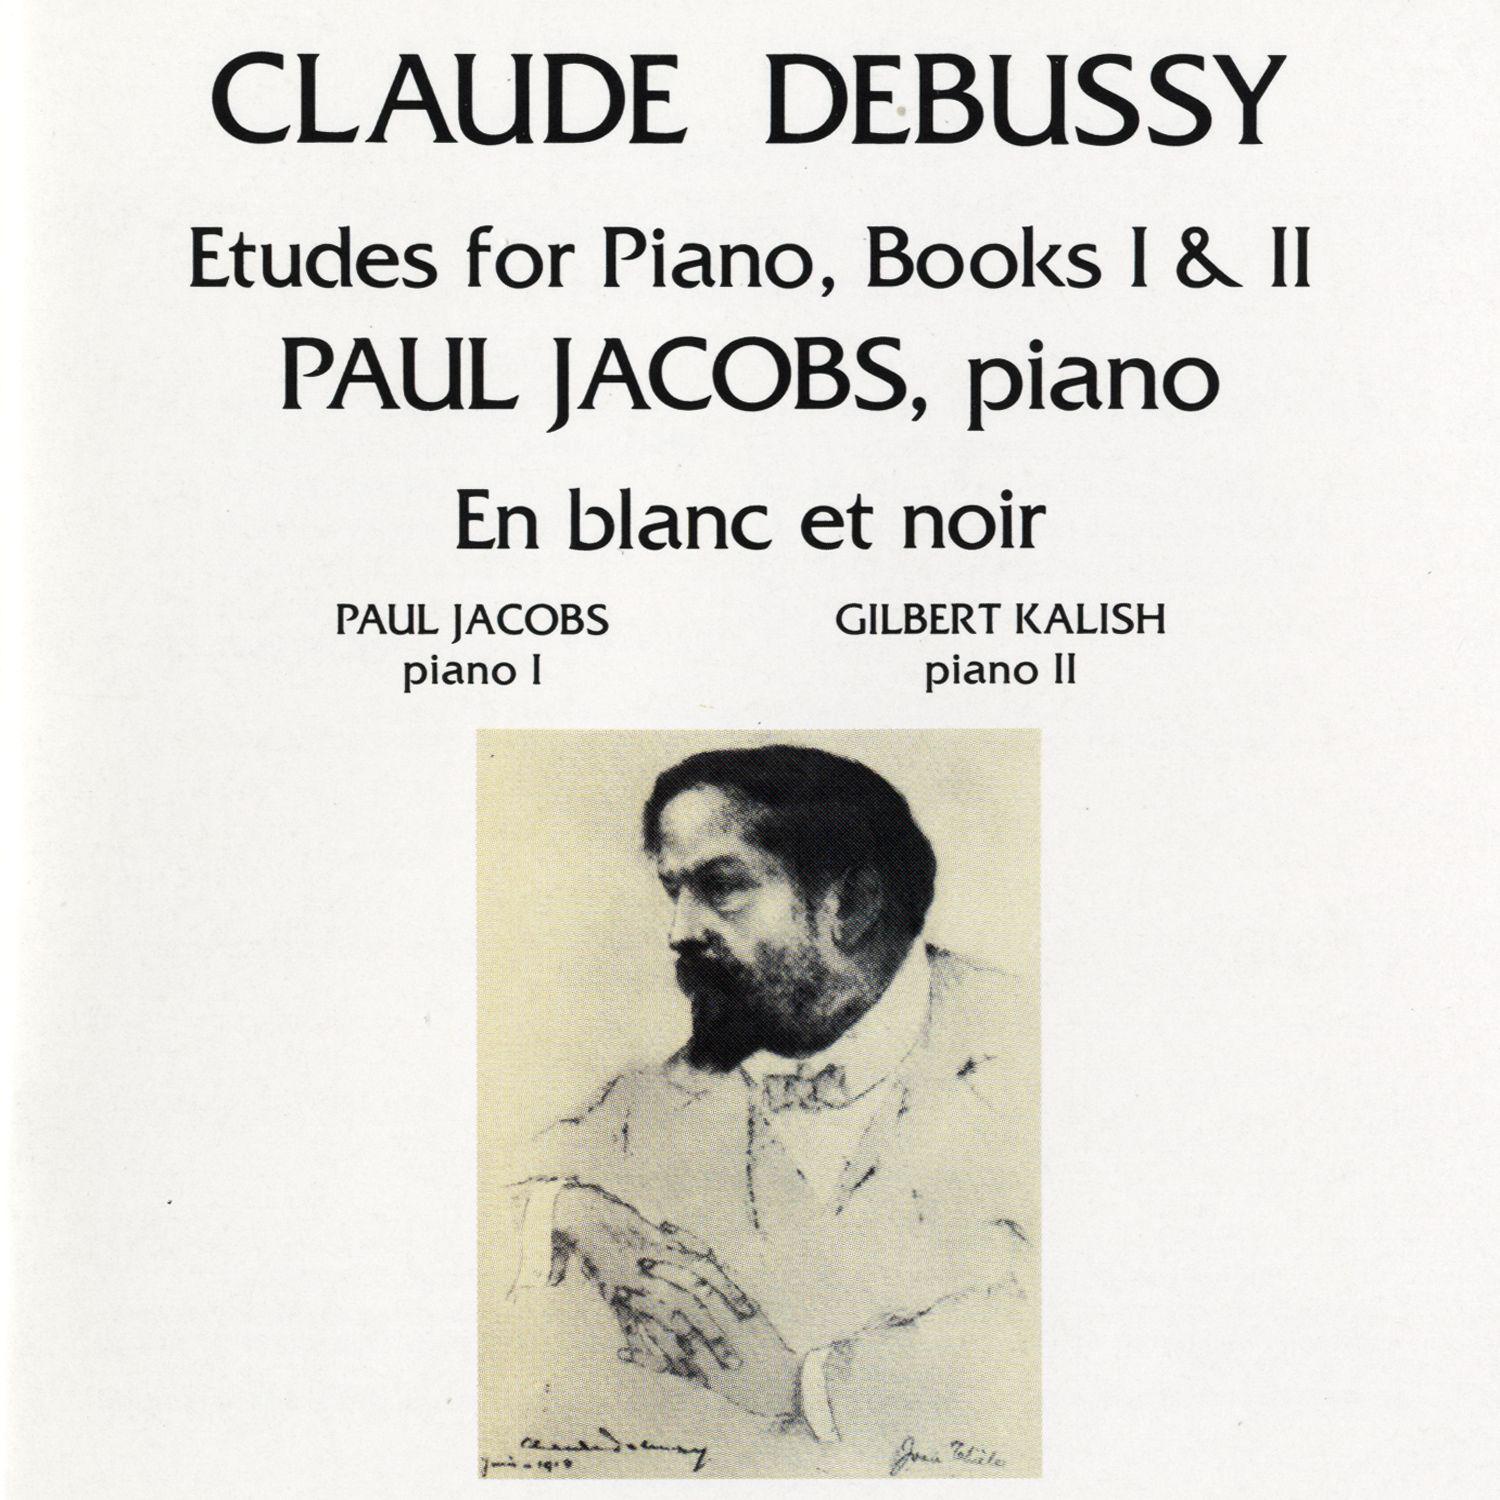 Debussy: Etudes for Piano, Book II; Pour les degres chromatiques